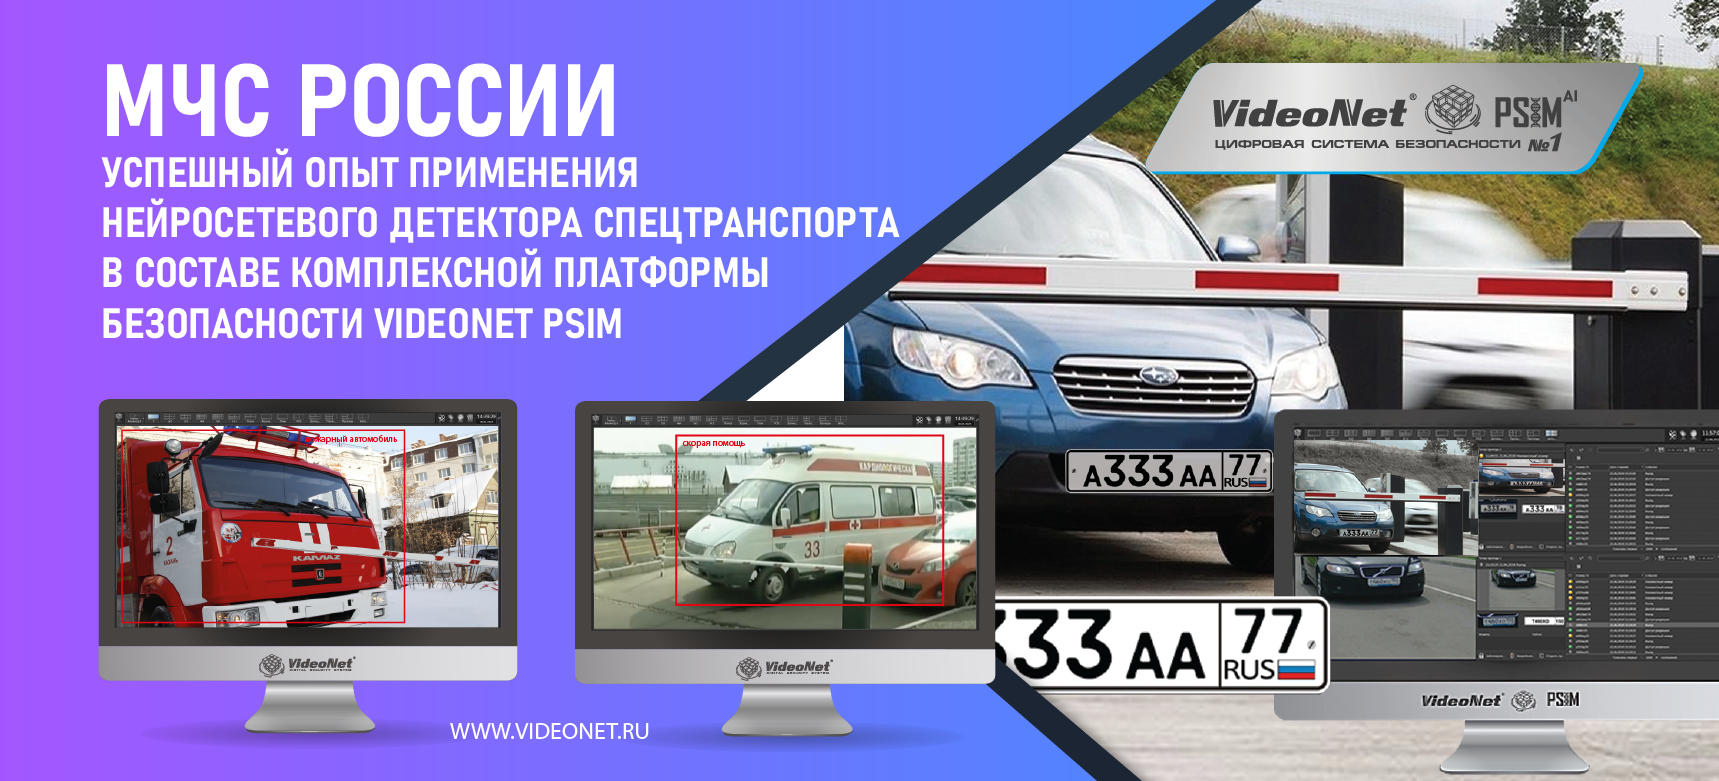 Эффективность VideoNet подтверждена МЧС РФ